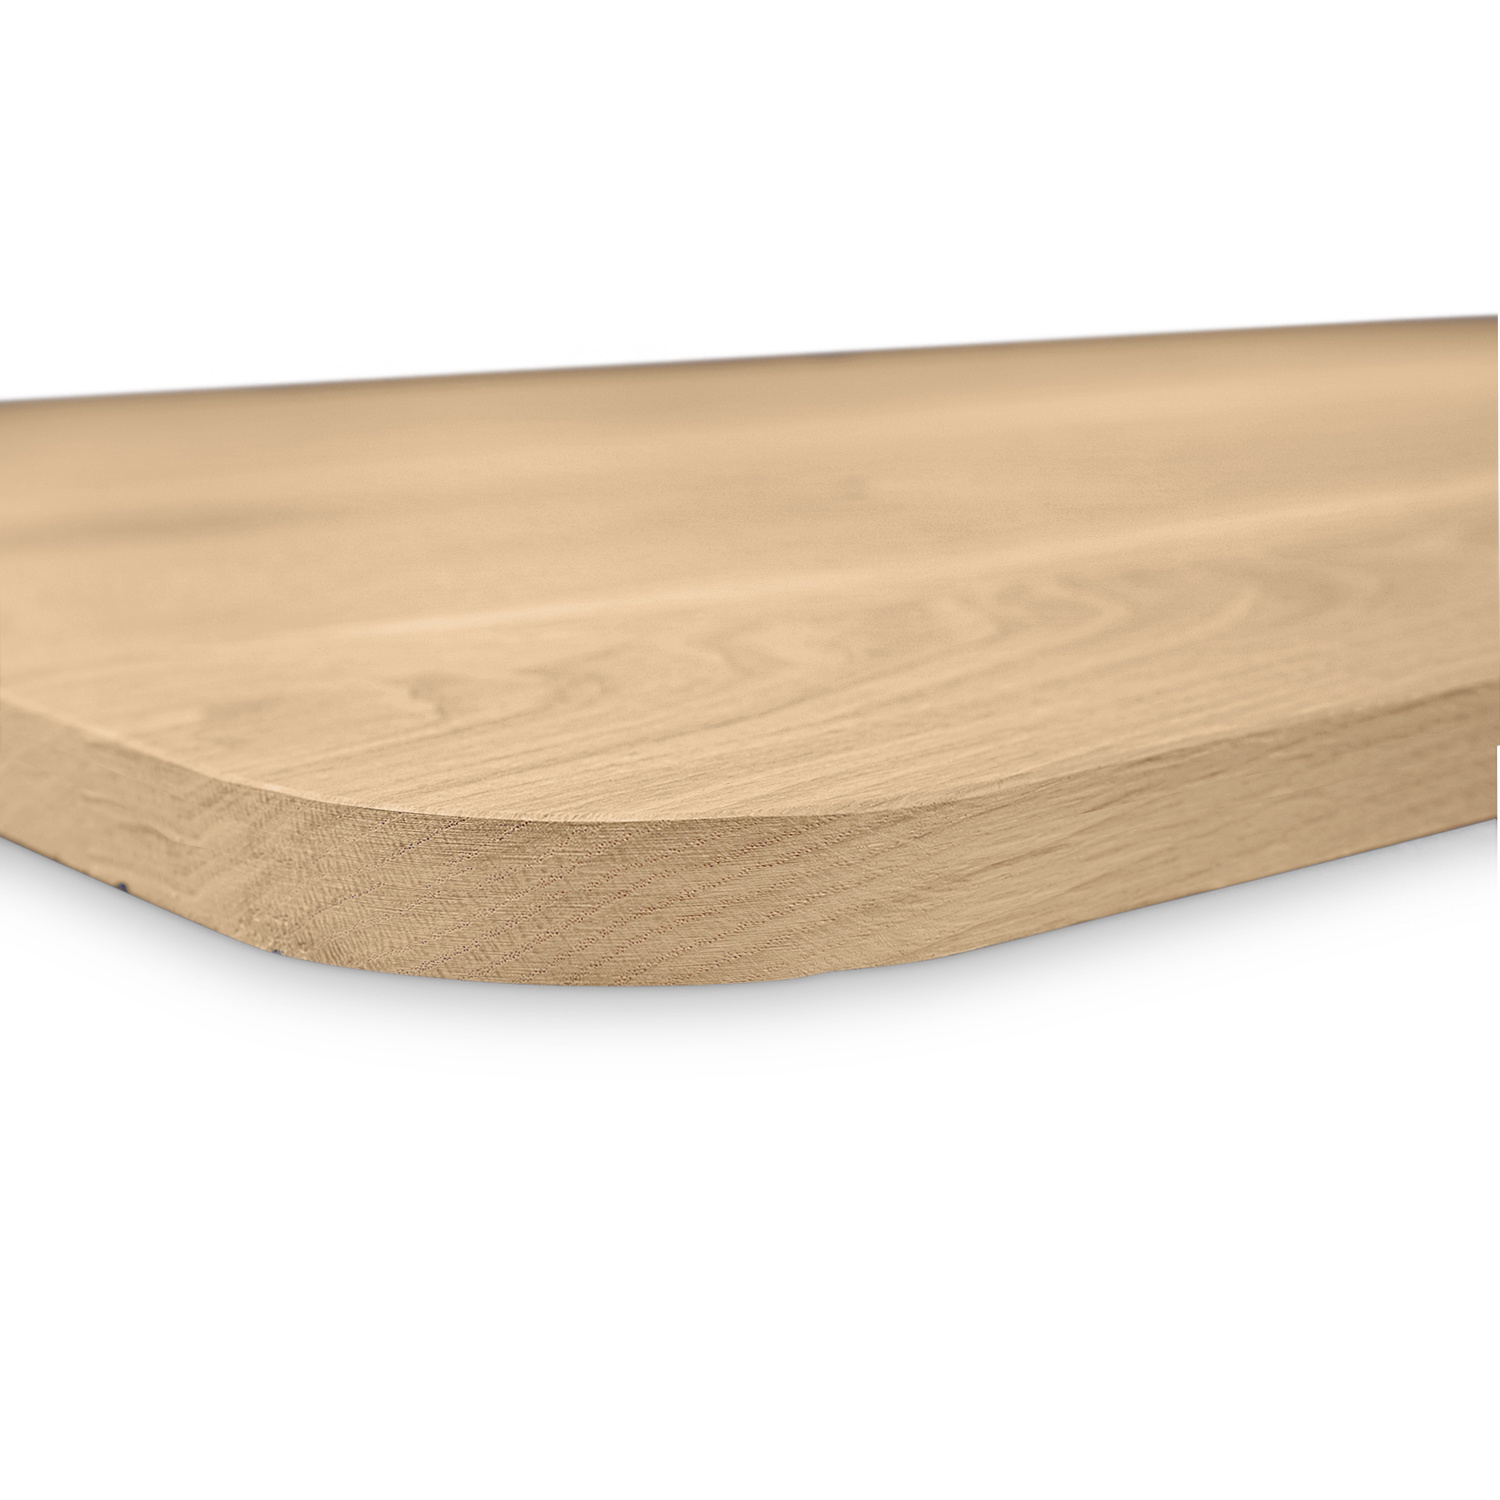  Eiken tafelblad met ronde hoeken - 4 cm dik (1-laag) - Diverse afmetingen - extra rustiek Europees eikenhout - met extra brede lamellen (circa 14-20 cm) - verlijmd kd 8-12%